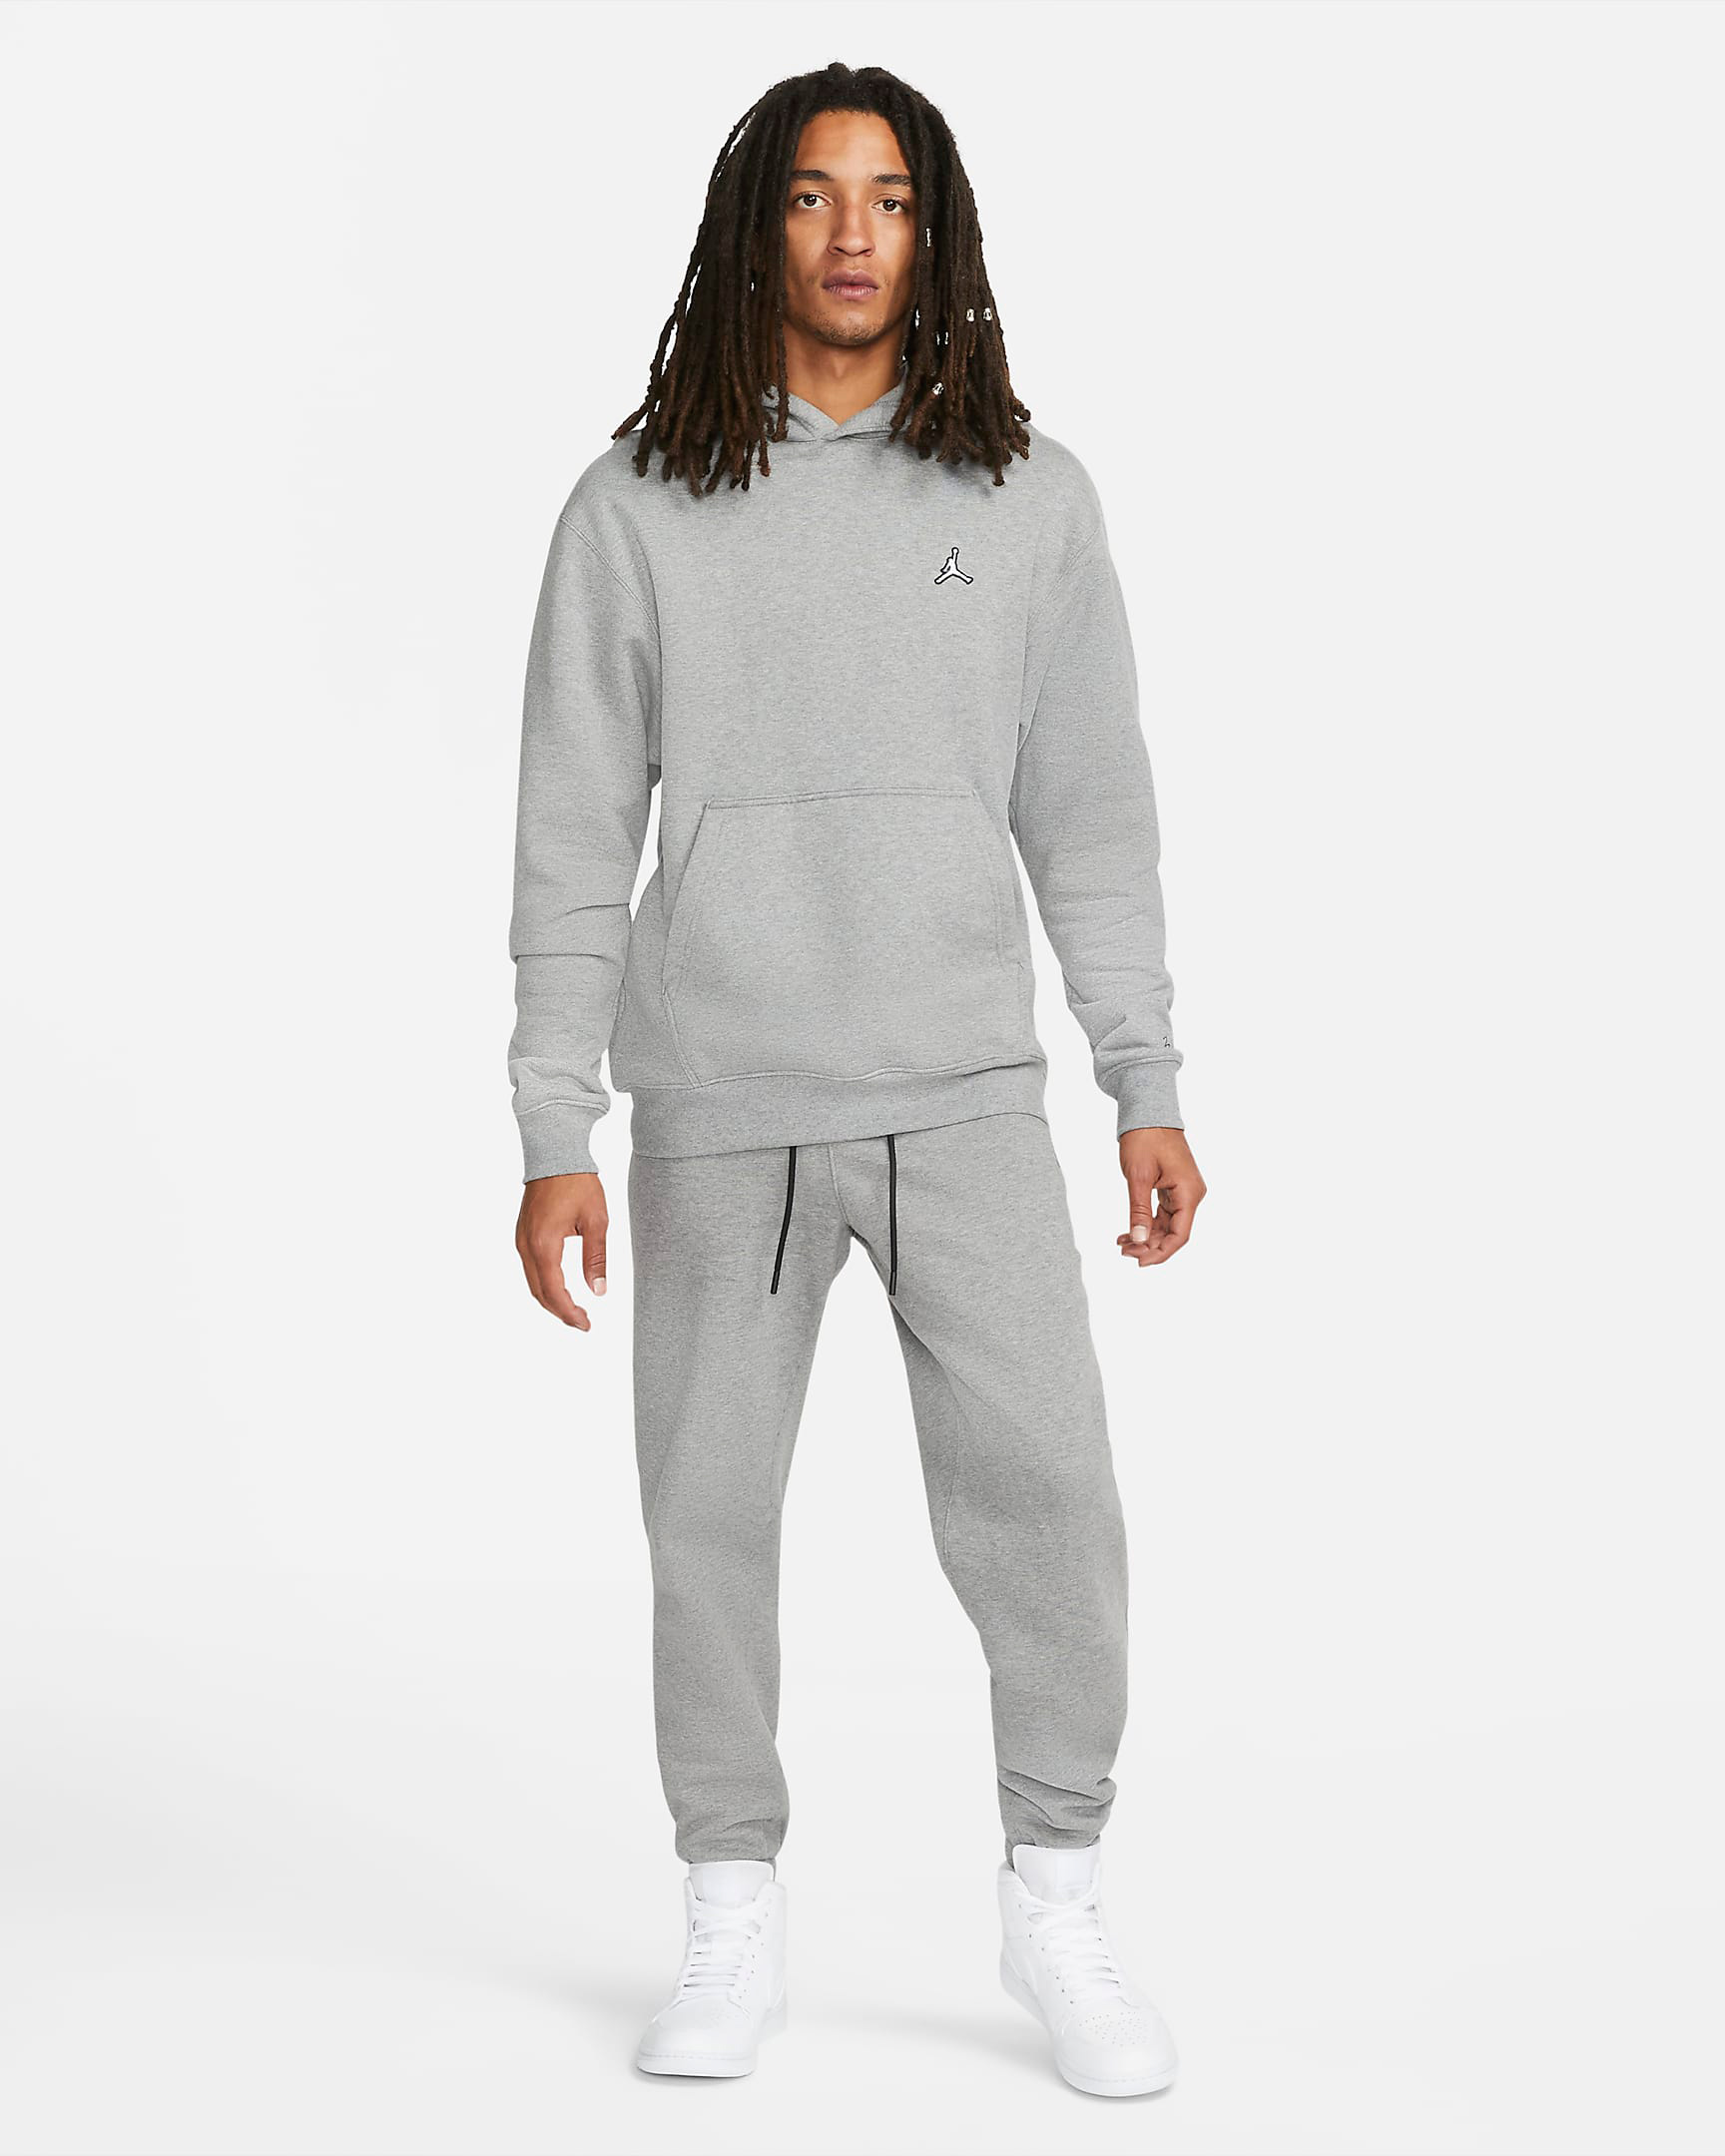 air-jordan-11-cool-grey-2021-pullover-hoodie-pants-outfit